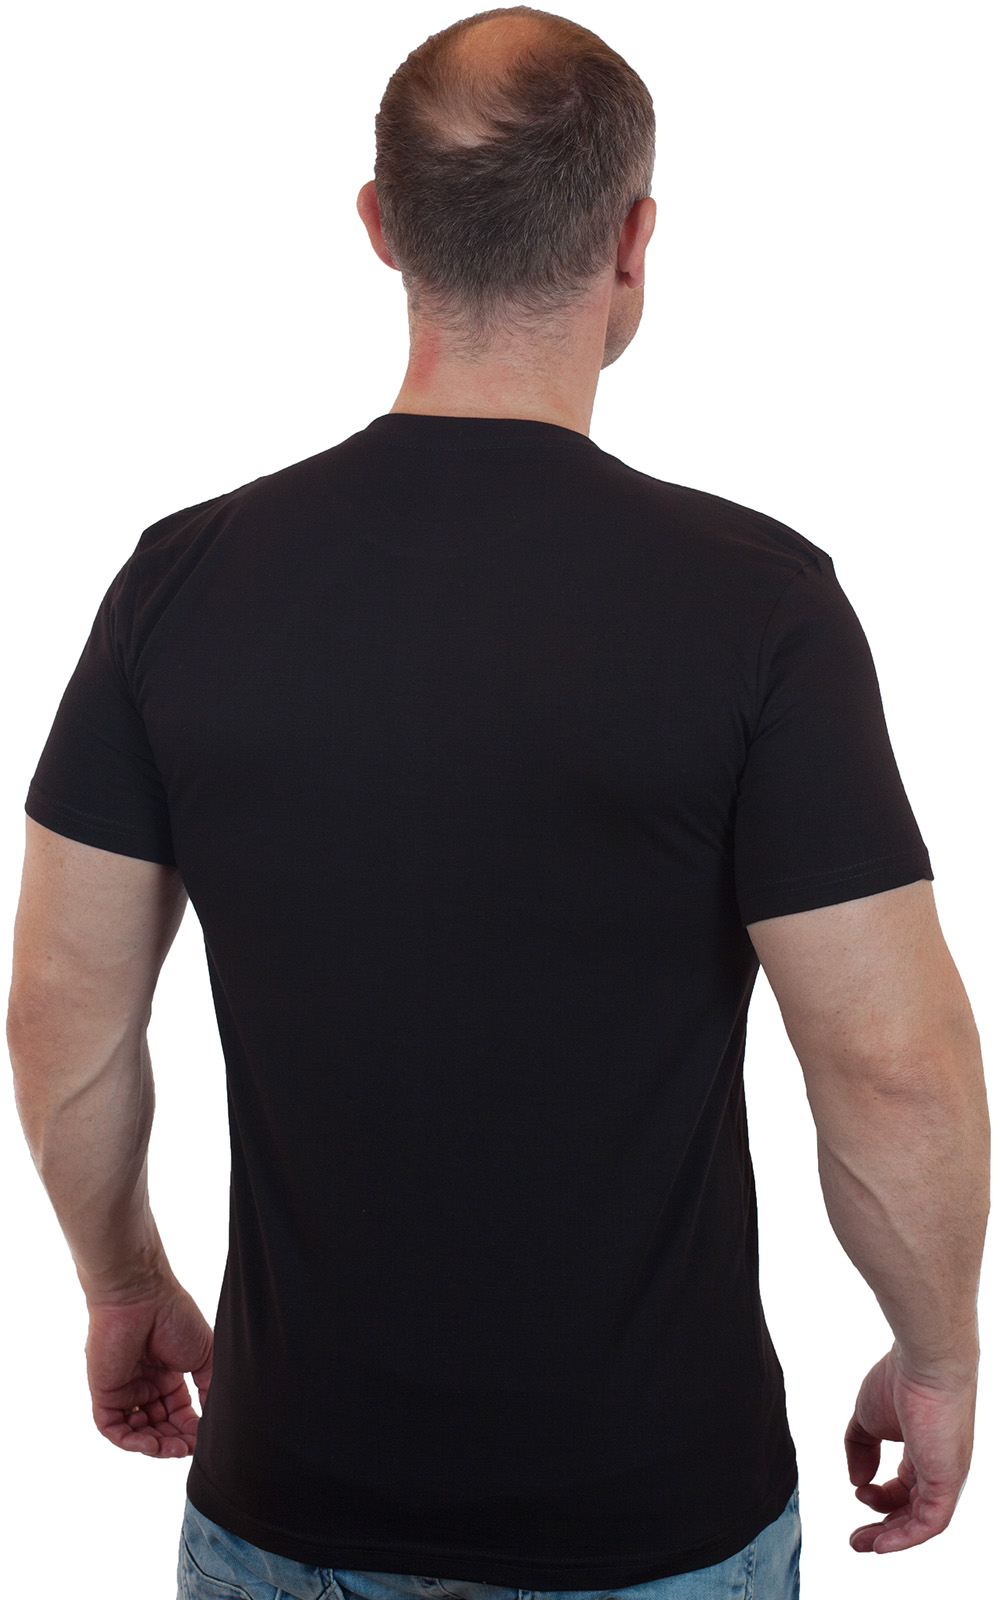 Недорогие футболки для мужчин – супер ассортимент в интернет магазине Военпро